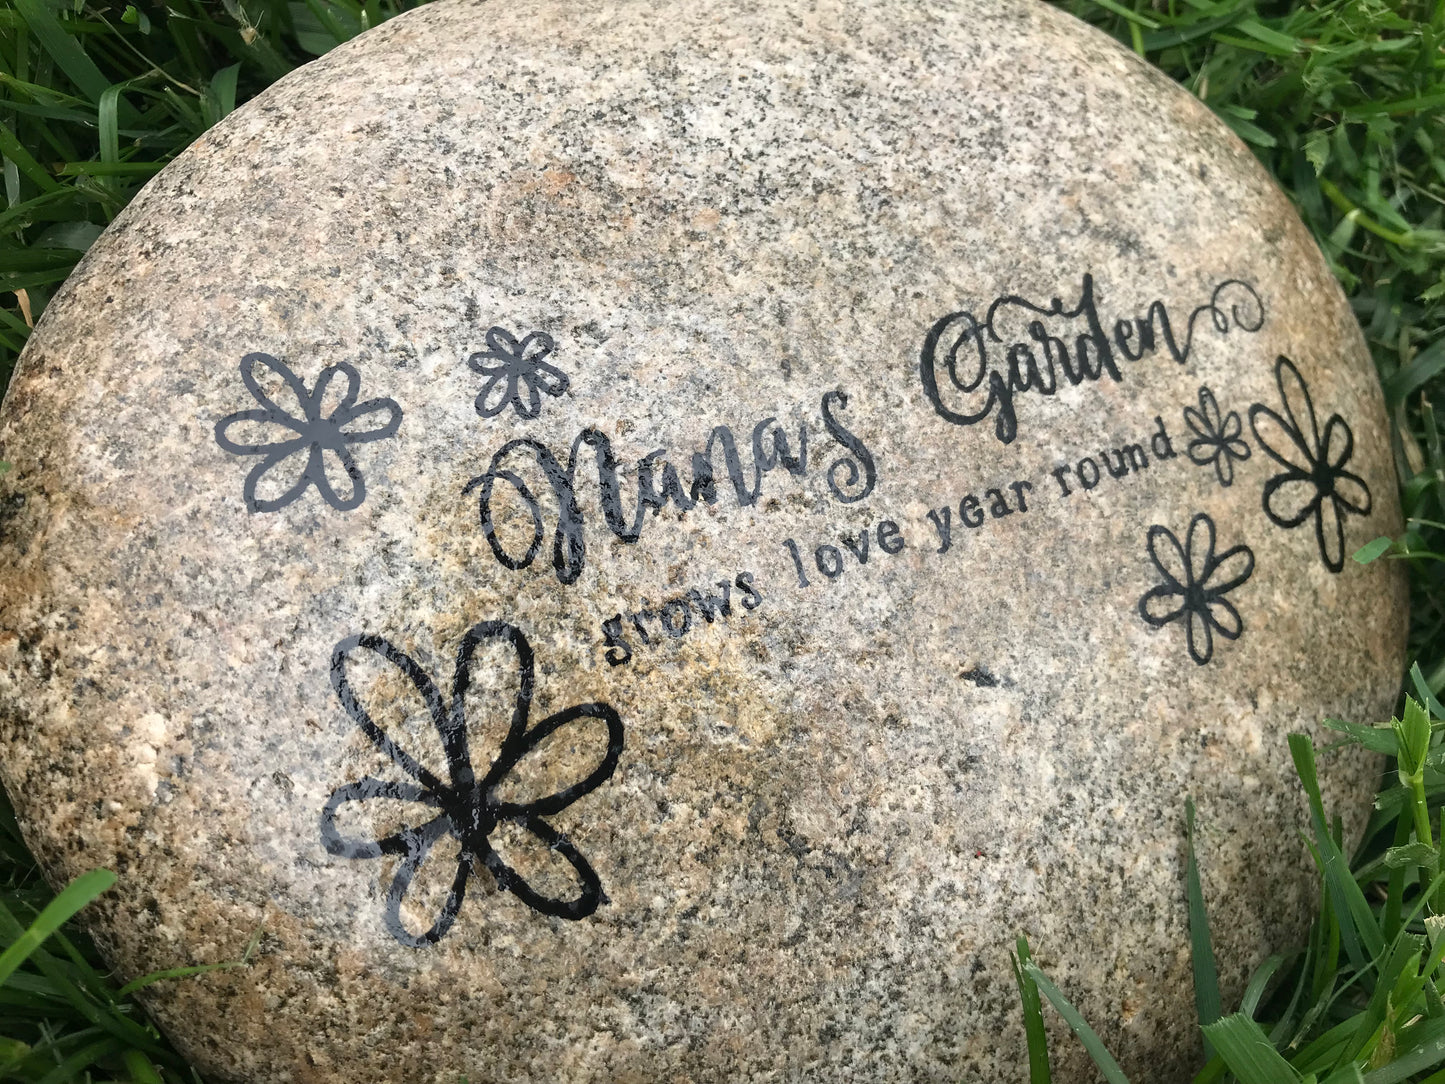 Large Decorative Garden Stone - Grandma's Garden of Love